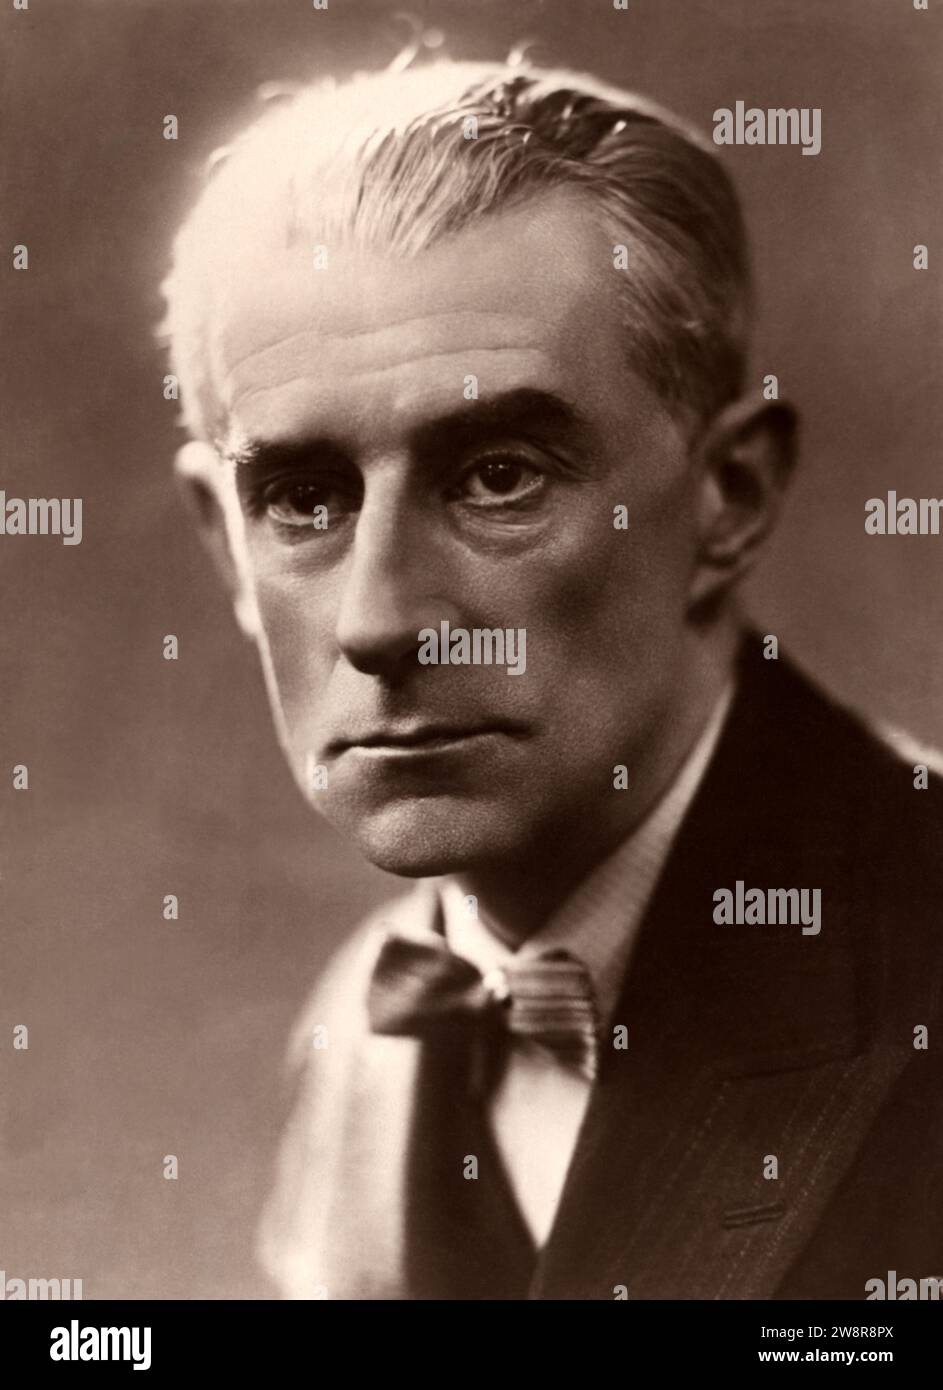 1935 c., PARIS , FRANCE : The celebrated french music composer MAURICE RAVEL ( 1875 - 1937 ). His most popular composition is the BOLERO . Photo by Henri Manuel  ( 1874 - 1947 ). - MUSICA CLASSICA - CLASSICAL - COMPOSITORE  - portrait - ritratto - BALLET - BALLETTO - DANCE - DANZA - MUSICISTA - MUSICA - bow tie - cravatta - papillon - HISTORY - FOTO STORICHE --- Archivio GBB Stock Photo